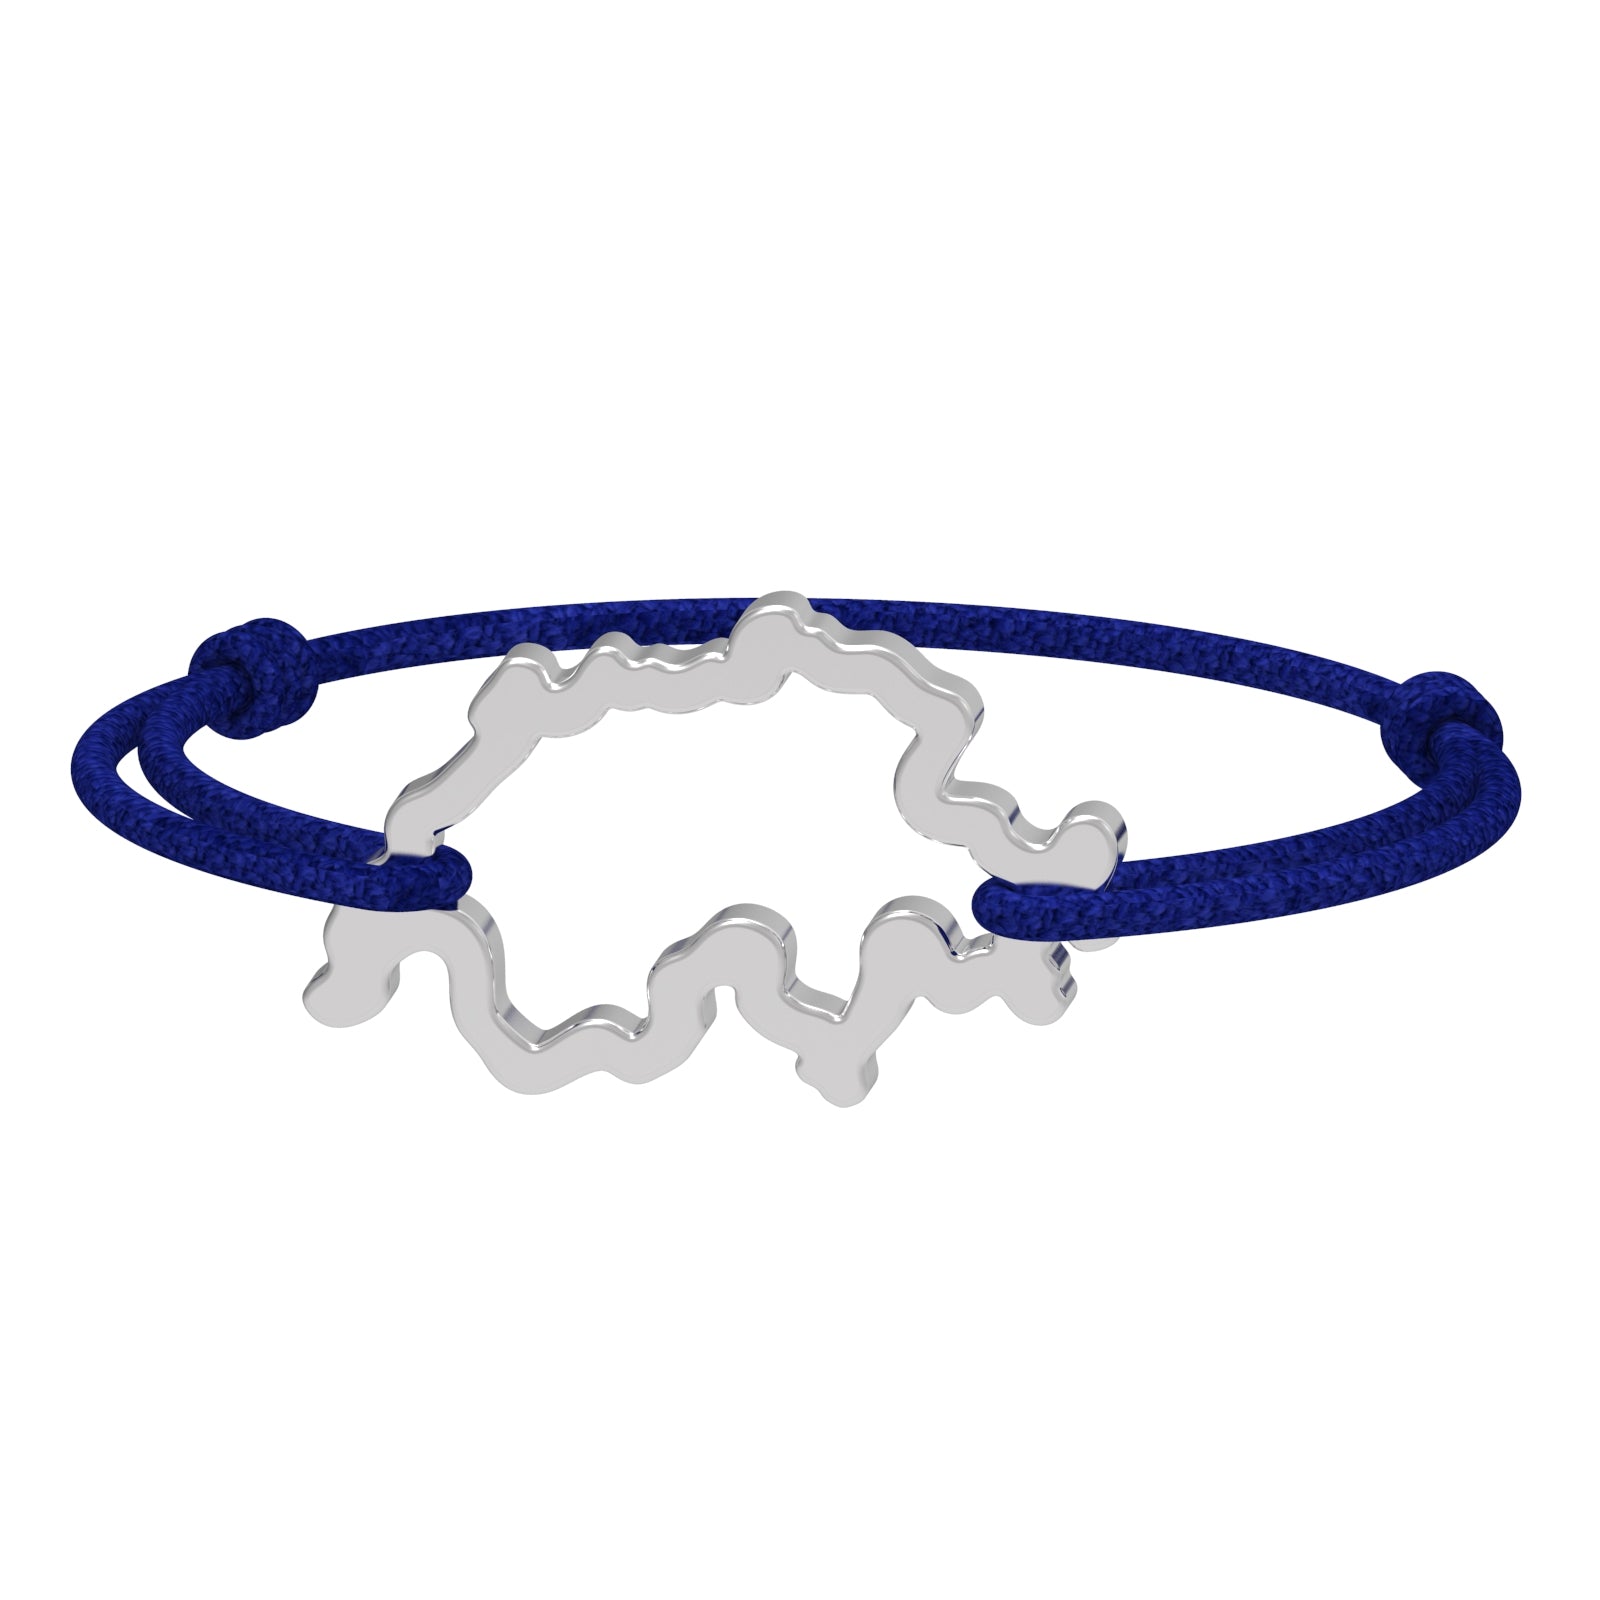 Dessin 3D du bracelet SwissMap en argent rhodié et cordon bleu